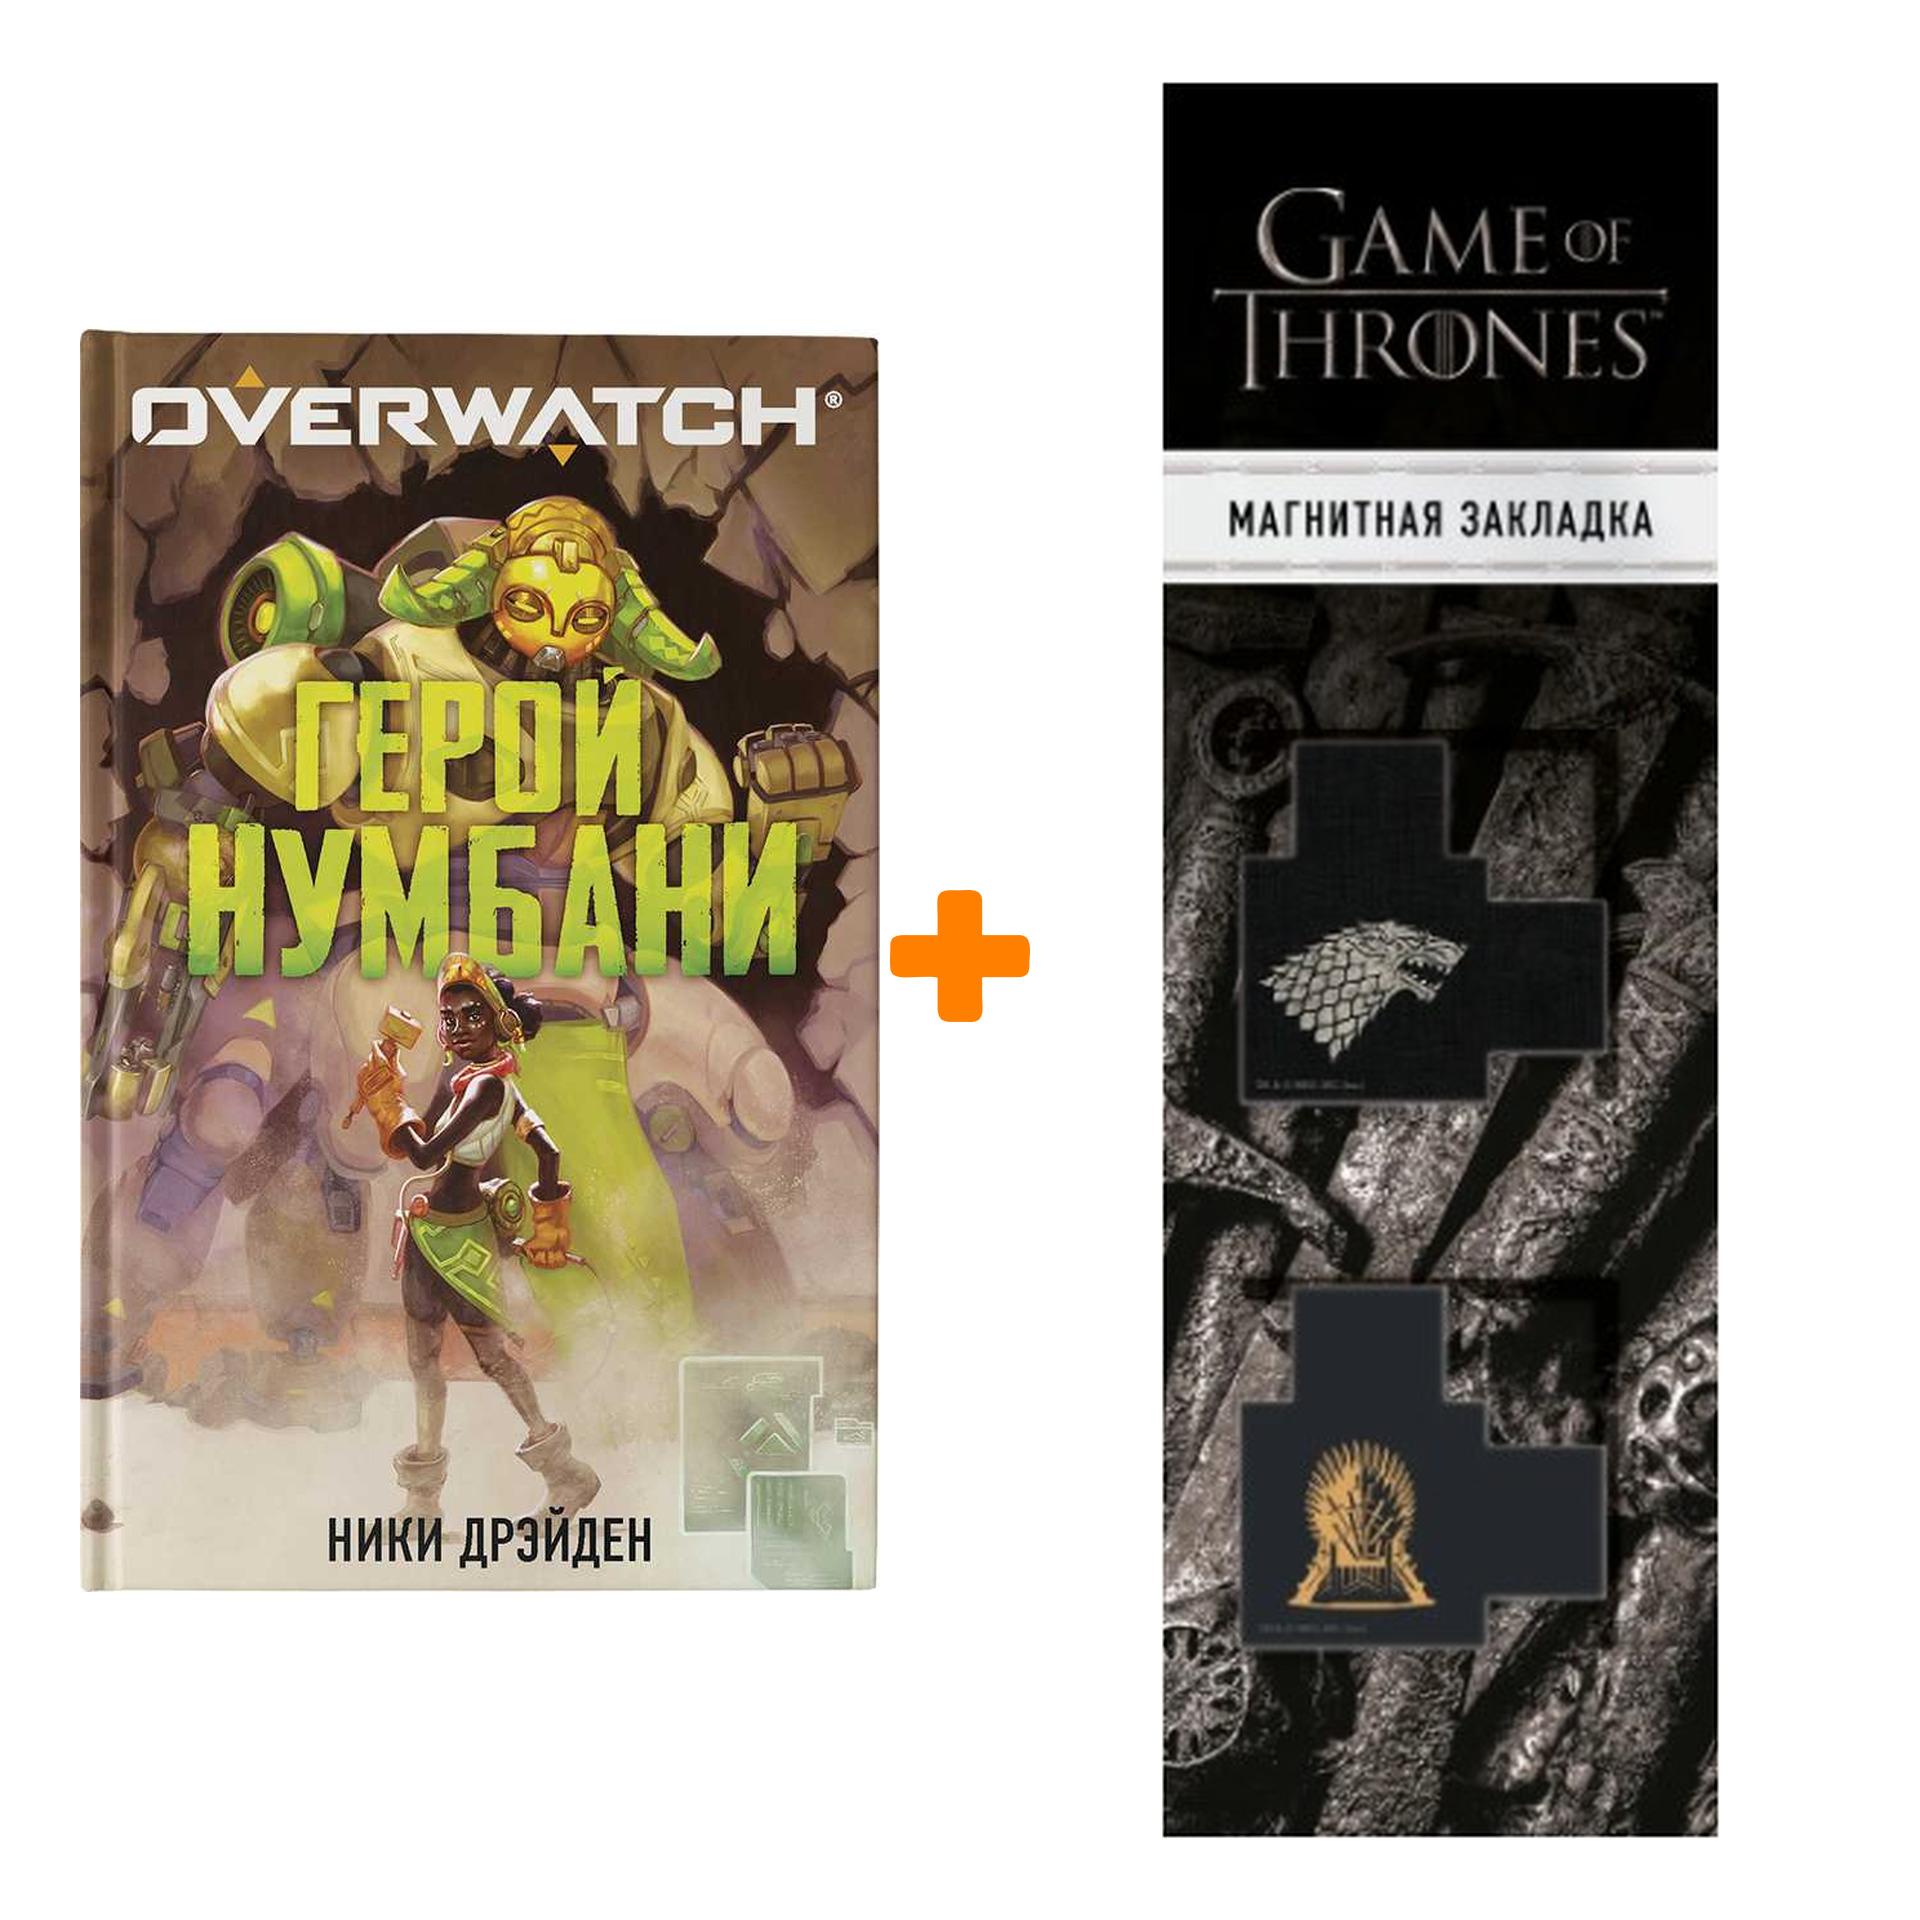 Набор Overwatch: Герой Нумбани. Дрэйден Н. + Закладка Game Of Thrones Трон и Герб Старков магнитная 2-Pack